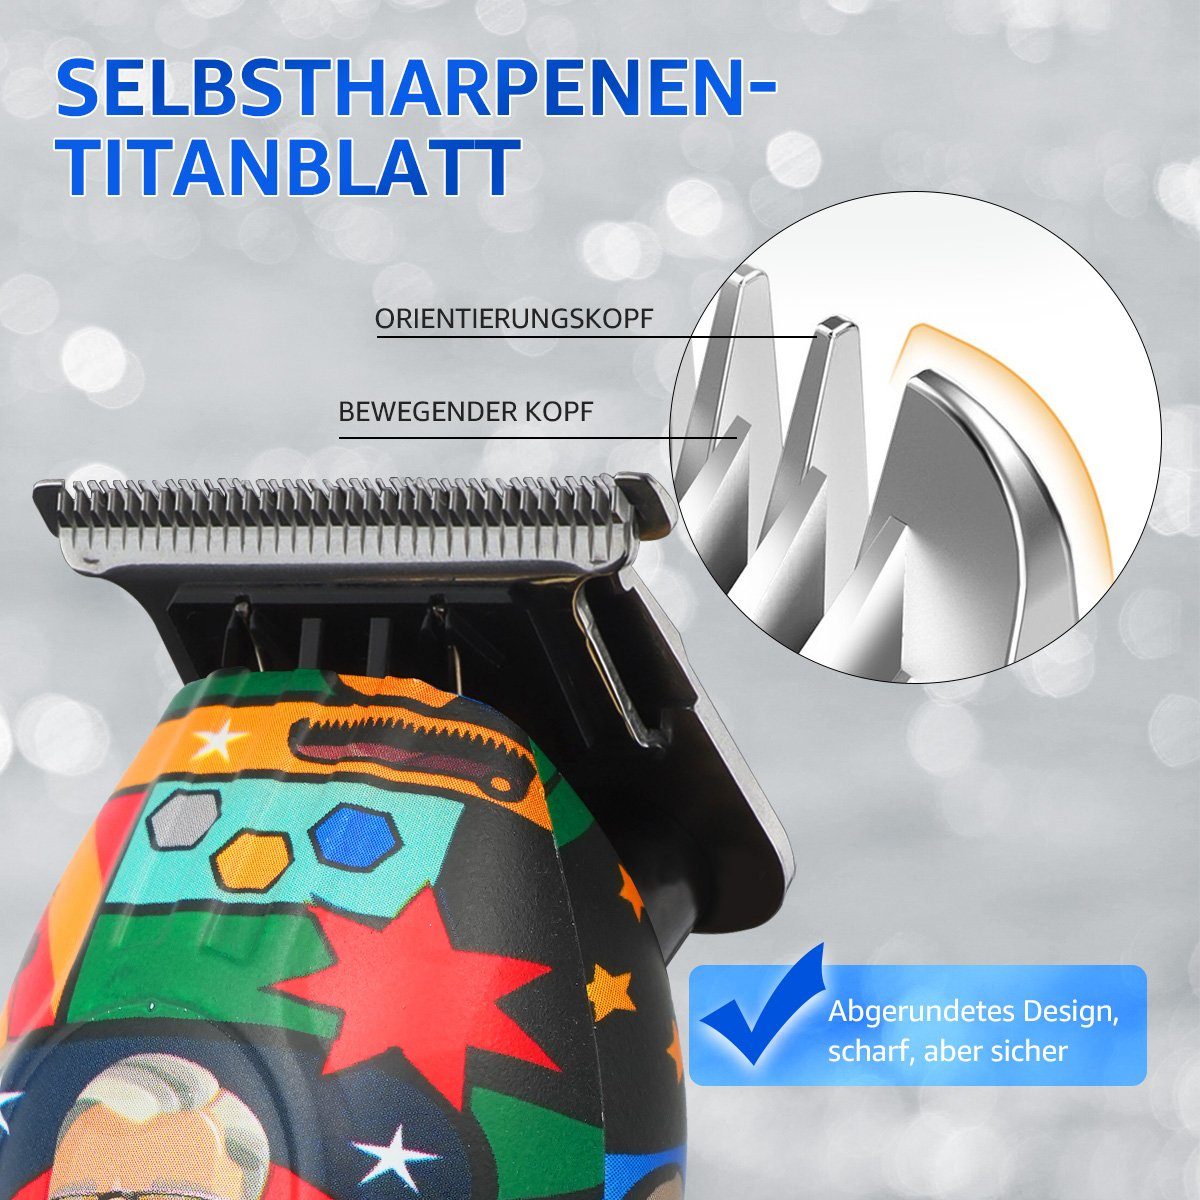 LifeImpree Haarschneider Profi 6500 rpm, - Einstellungen: 7000 1200 Bartschneider Comic-Kunst Herren, 2 Display, Haarschneidemaschine, LED Wasserdicht, mAh